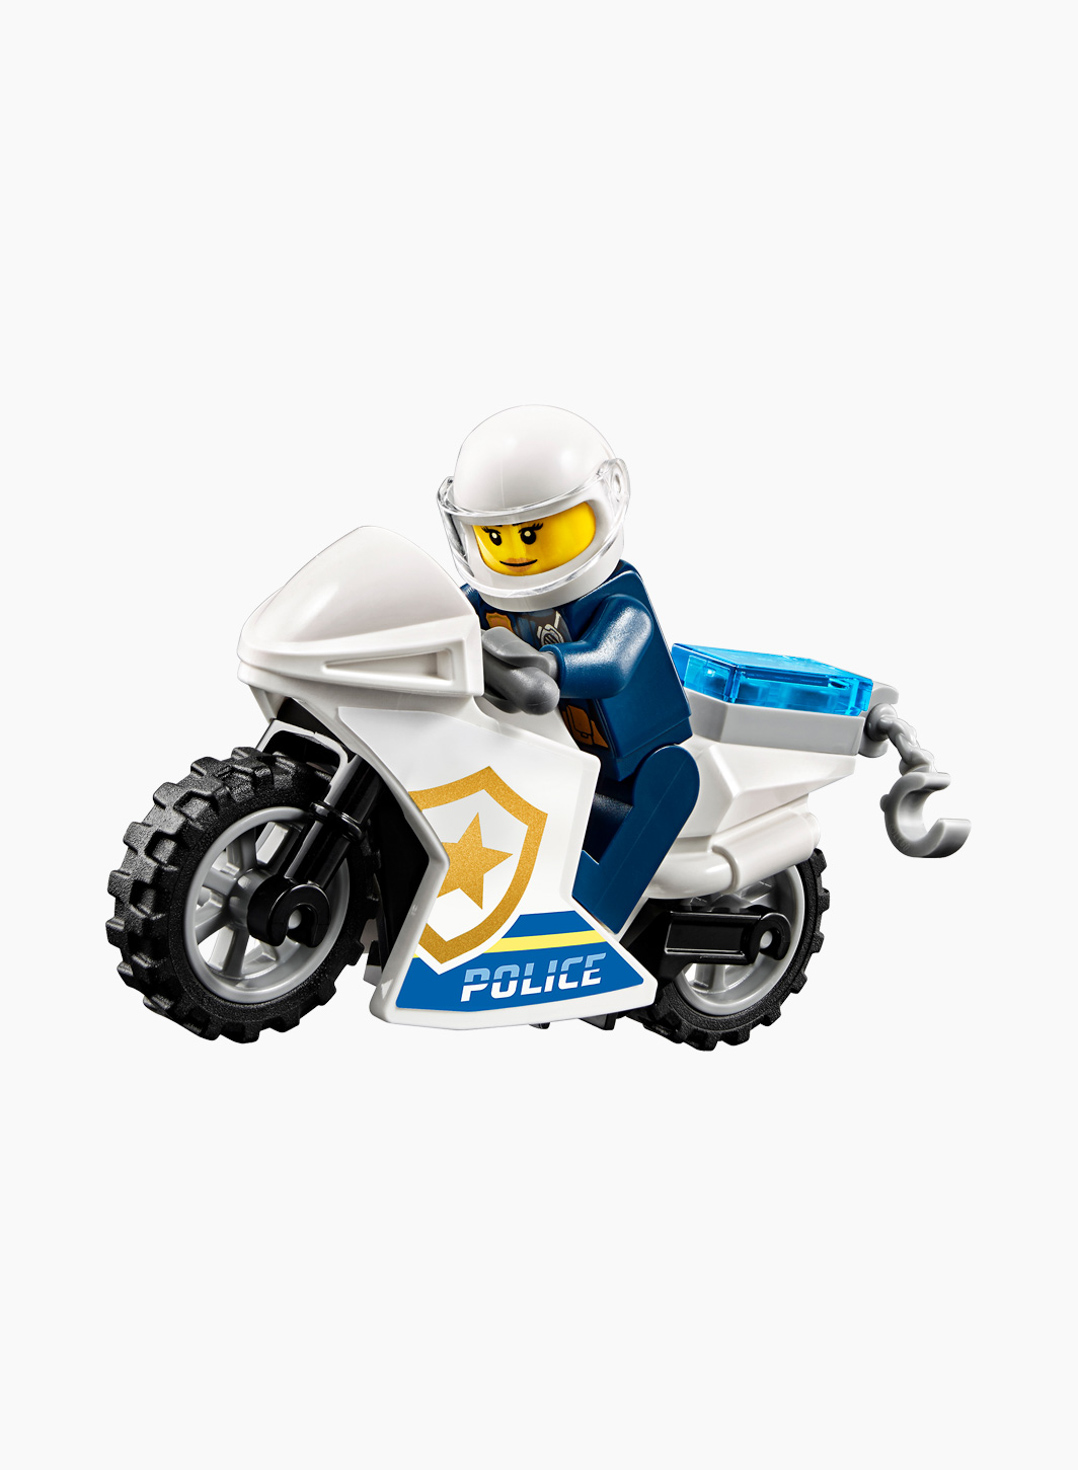 Lego City Конструктор Ограбление полицейского монстр-трака